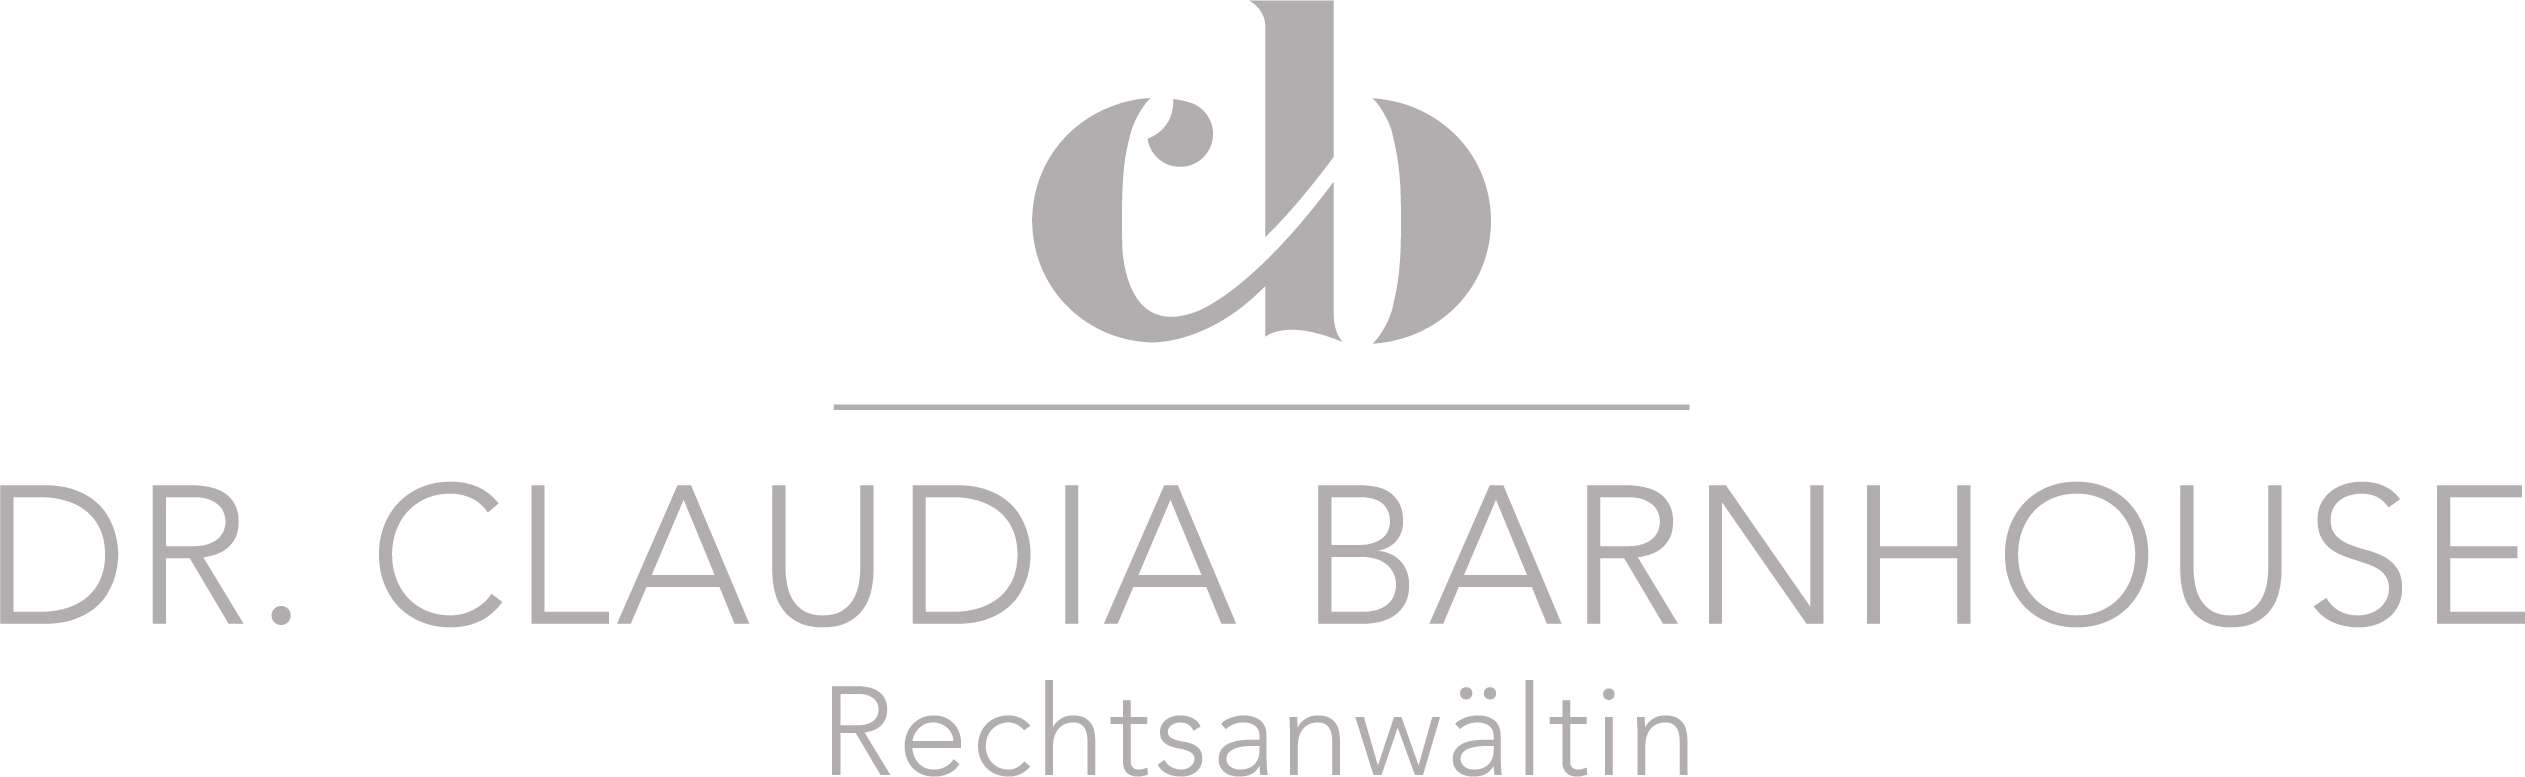 Rechtsanwalt Vorarlberg, Rechtsanwaltskanzlei Dr. Claudia Barnhouse, Rechtsberatung, Legalisator, Rechtsauskunft, Erbrecht, Baurecht, Zivilrecht